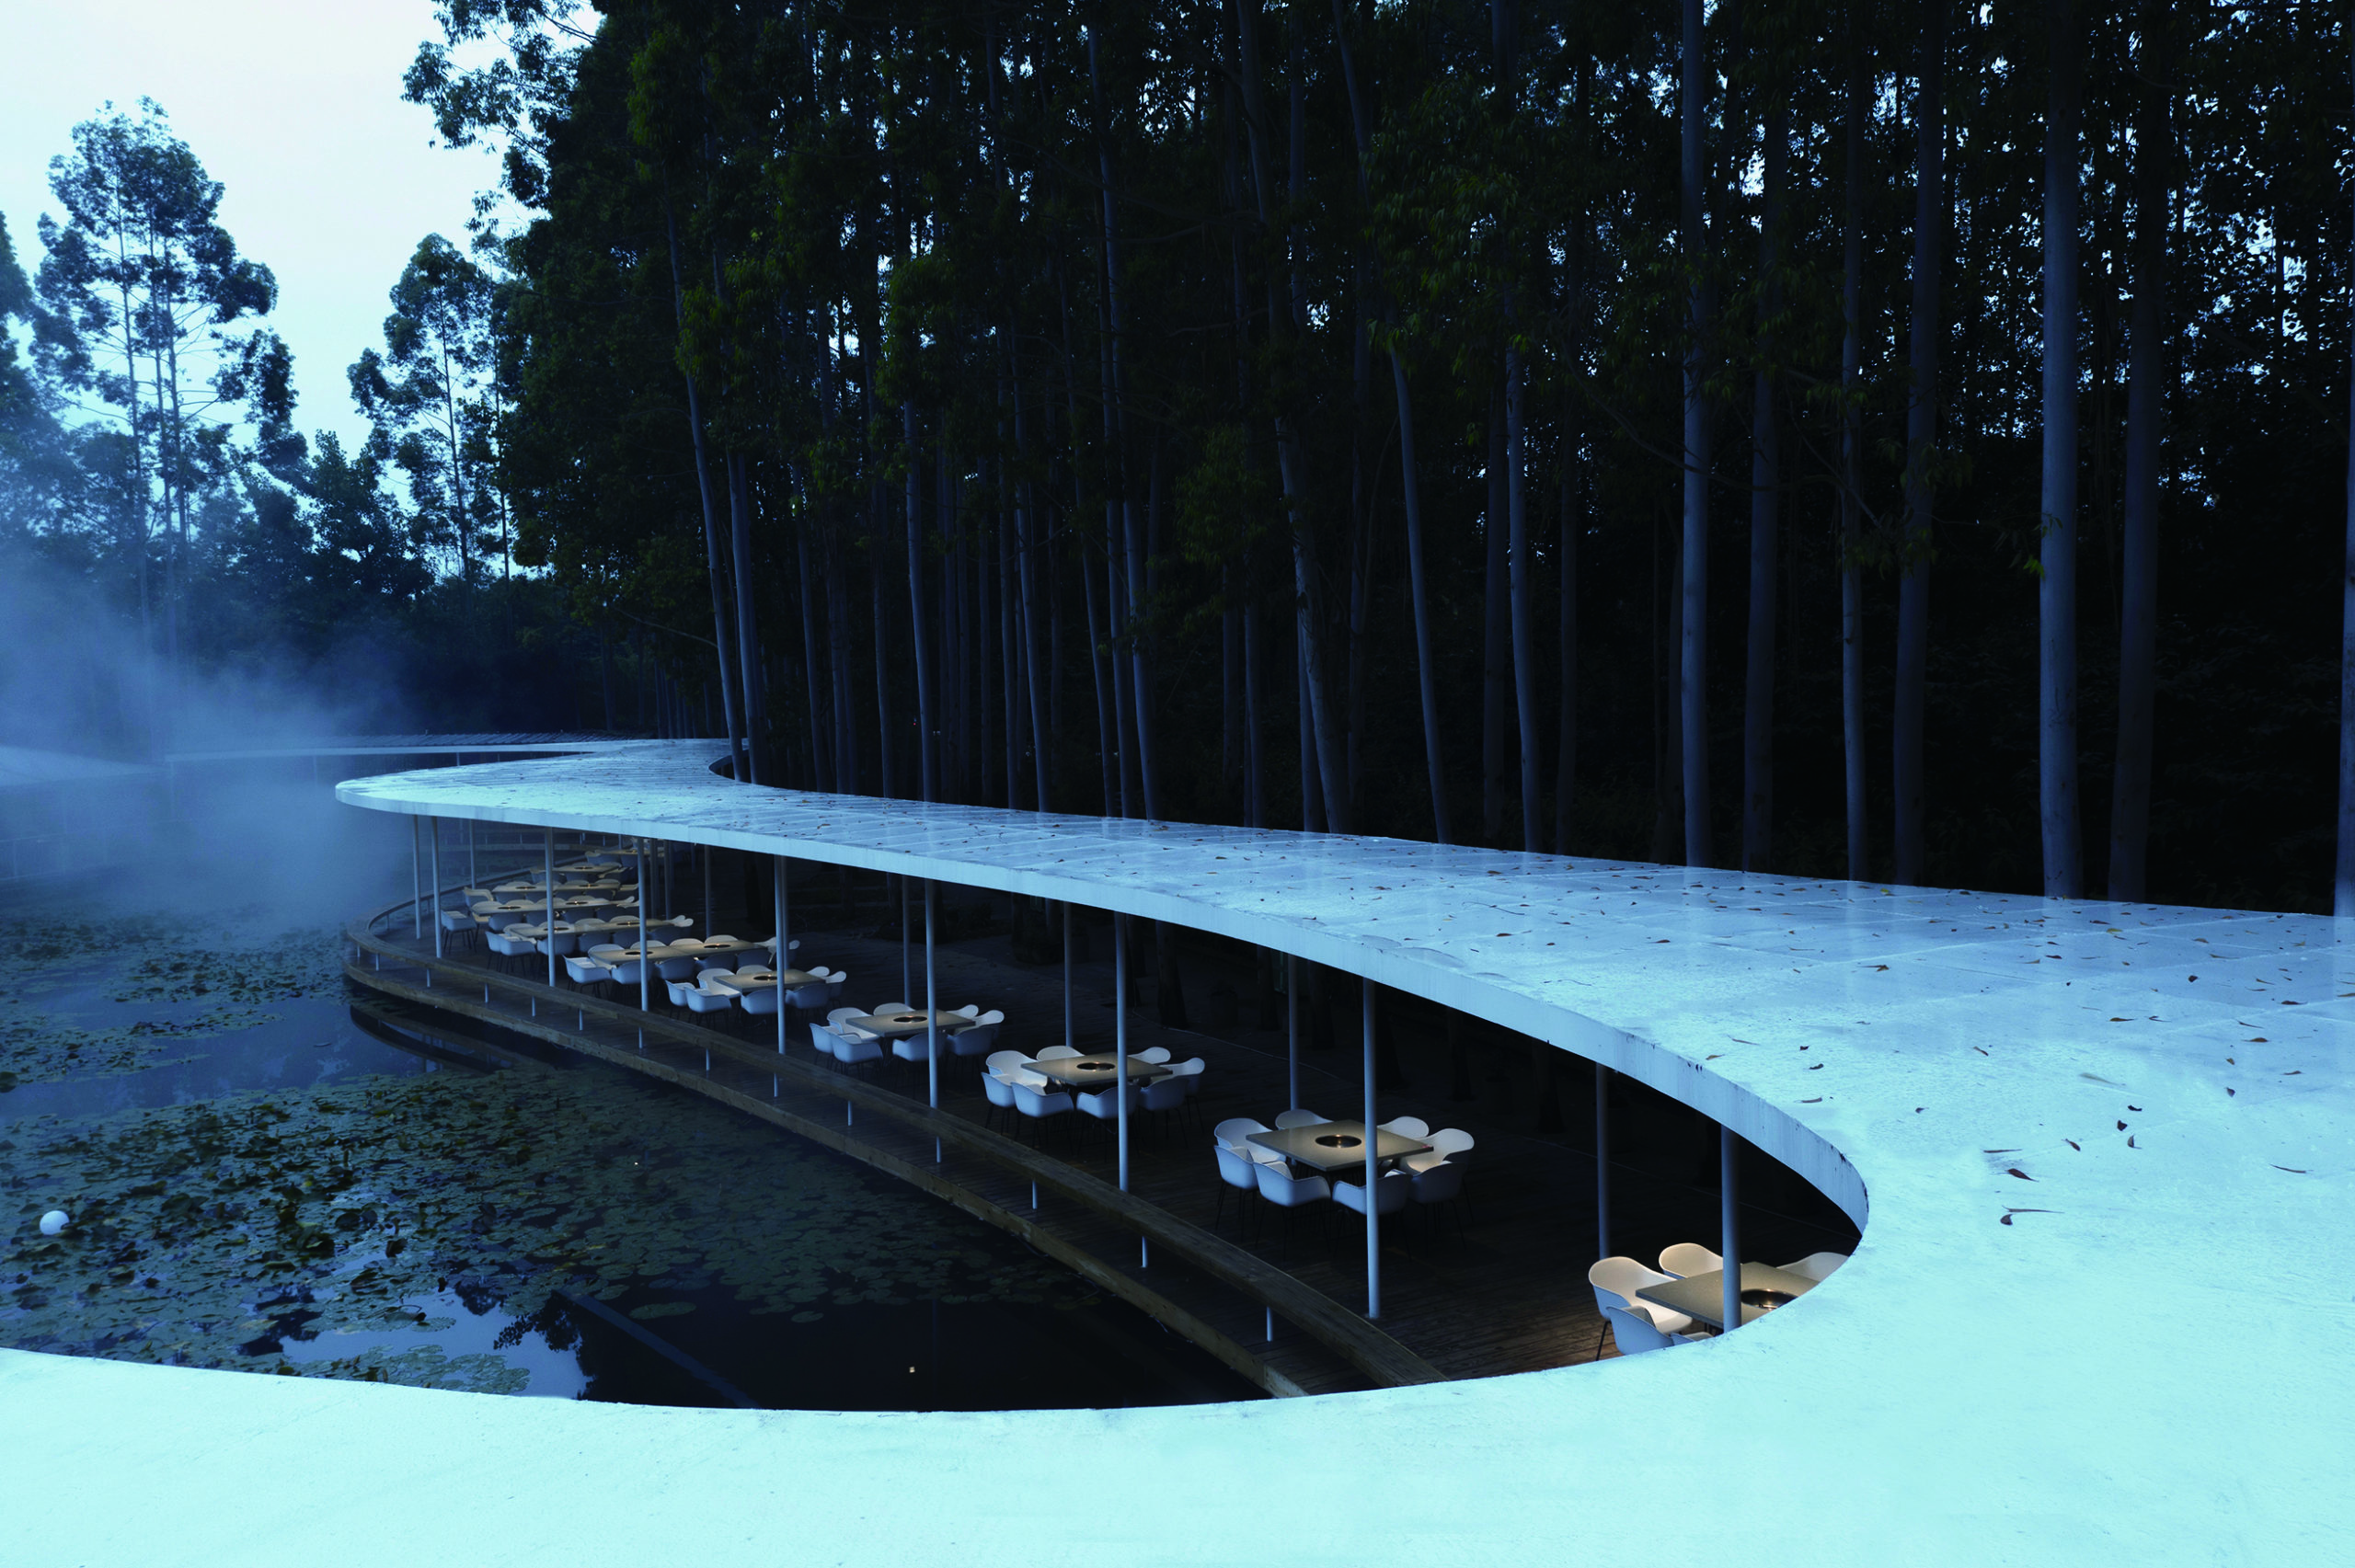 pergola Garden Hotpot Restaurant by MUDA-Architects, Chengdu, China